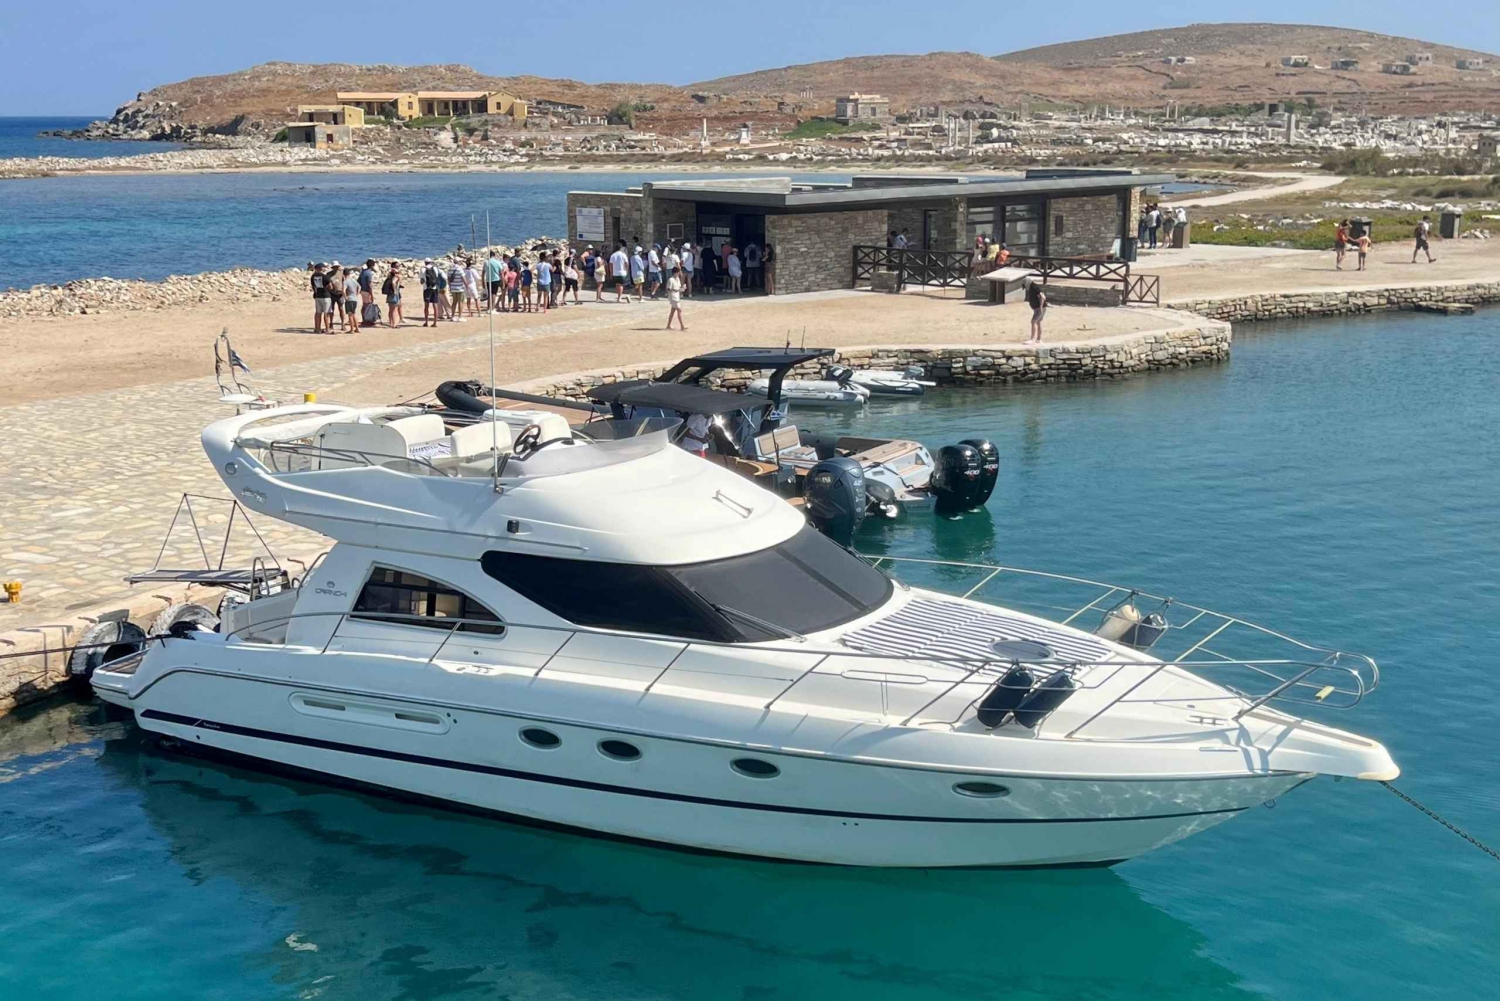 Athen til Aegina dagskrydstogt med privat yacht